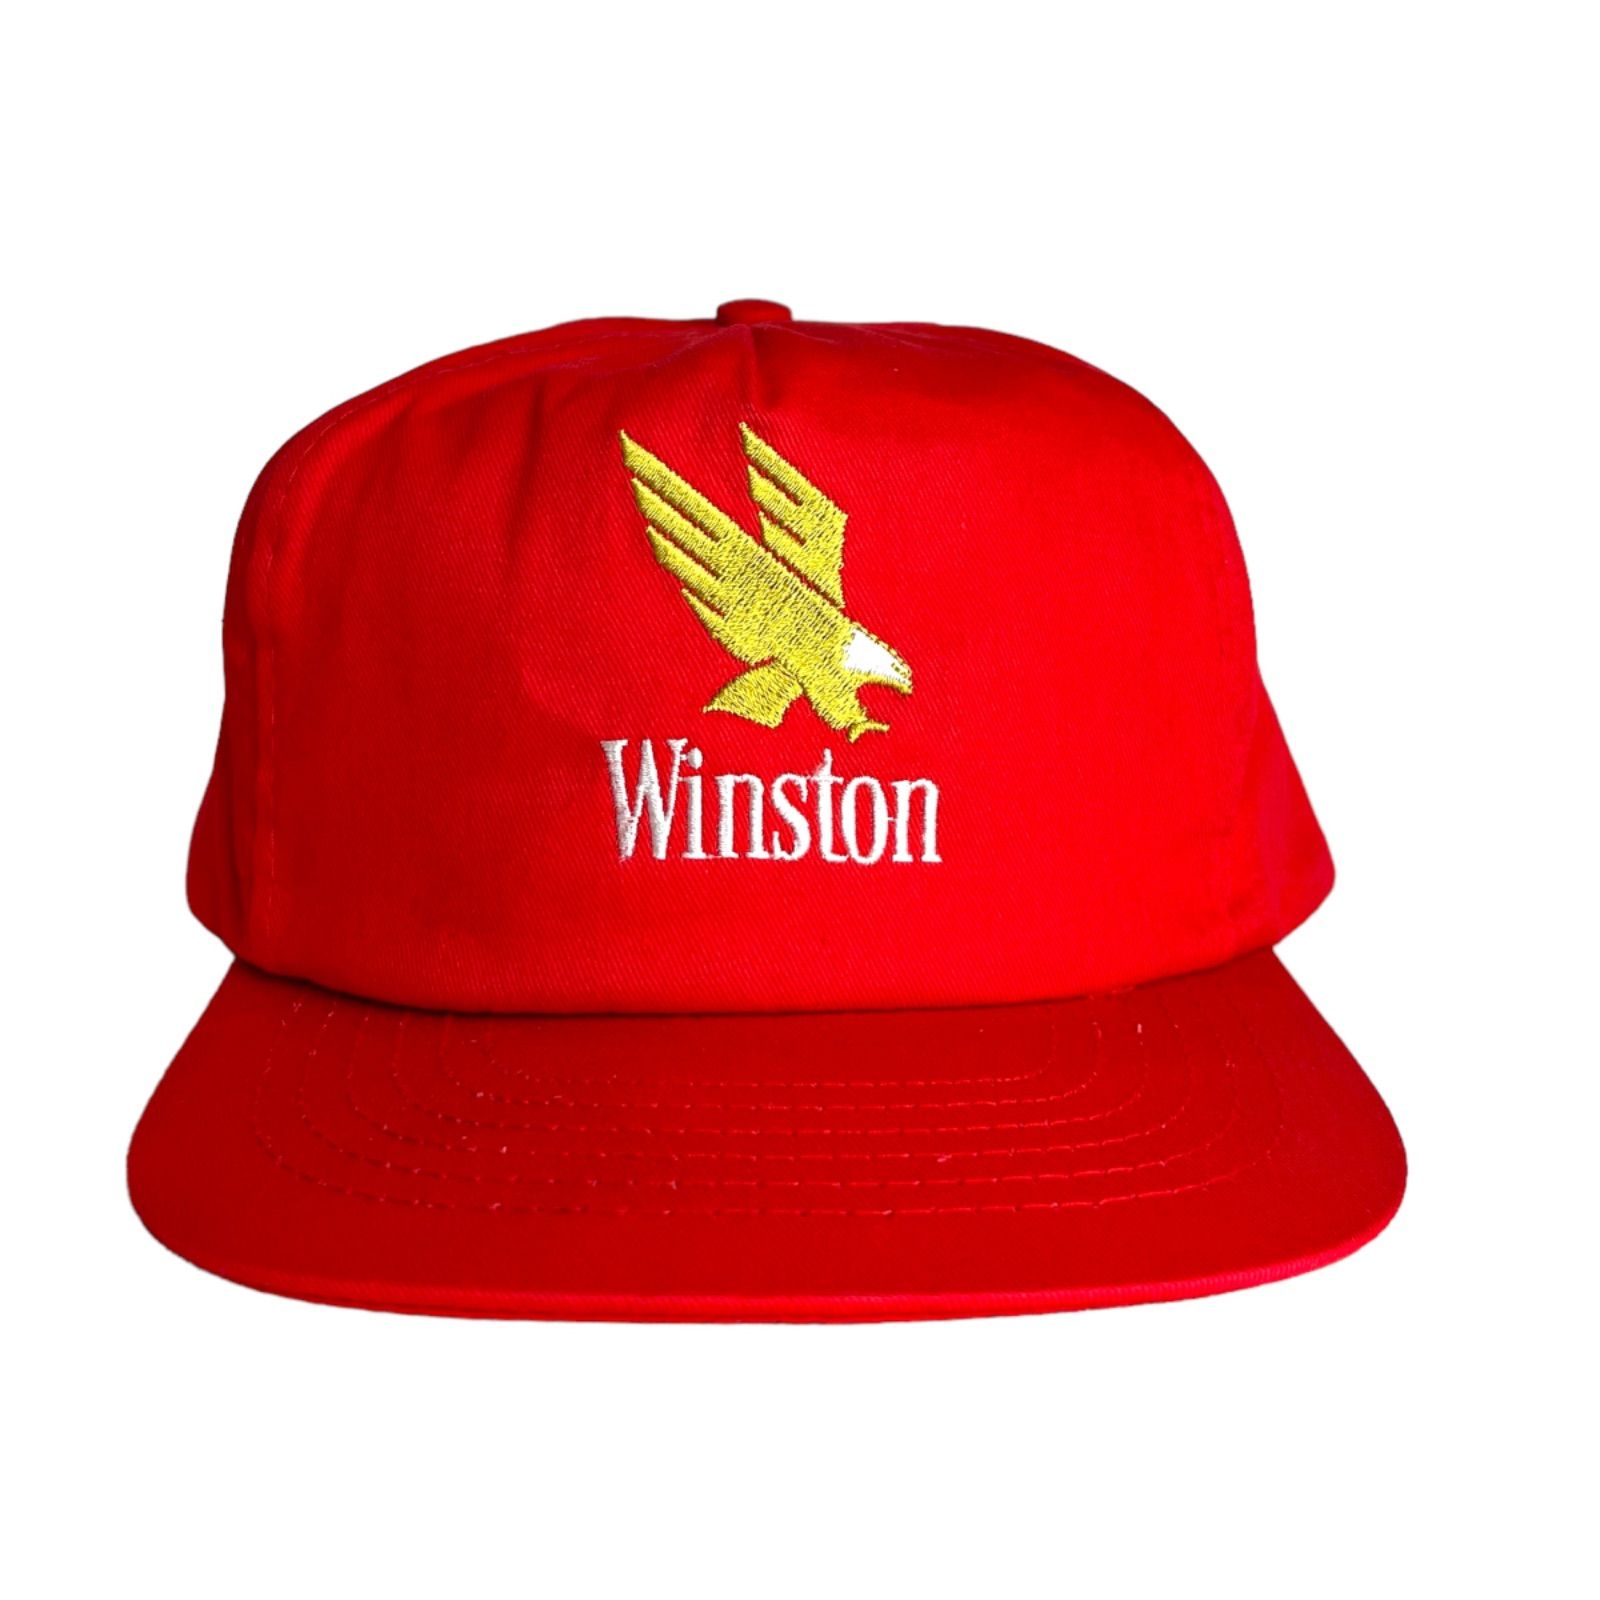 キャップ/帽子】Winston (ウィンストン) トラッカーキャップ スナップ 